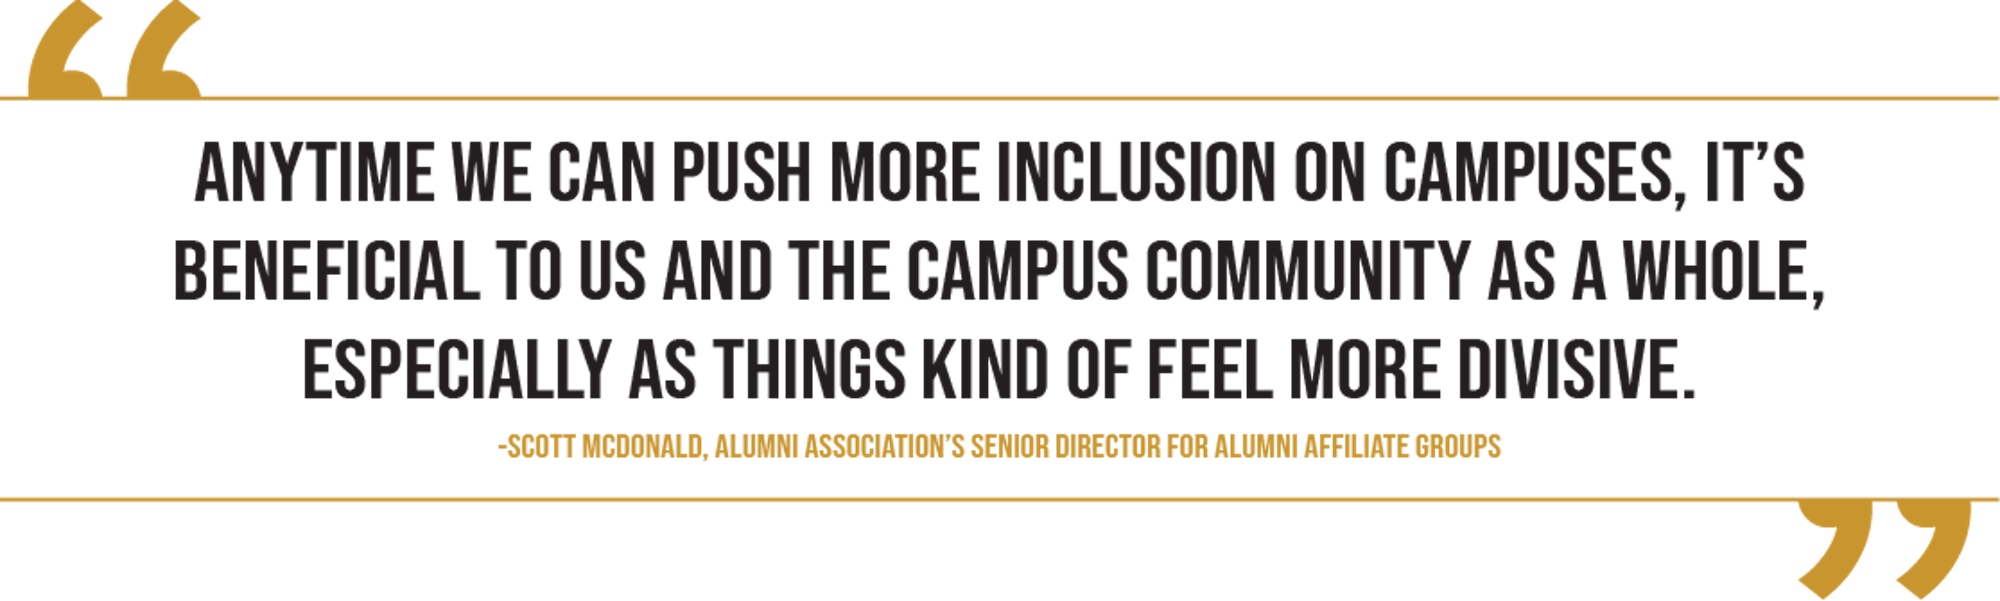 LGBTQ alumni council pull quote.png